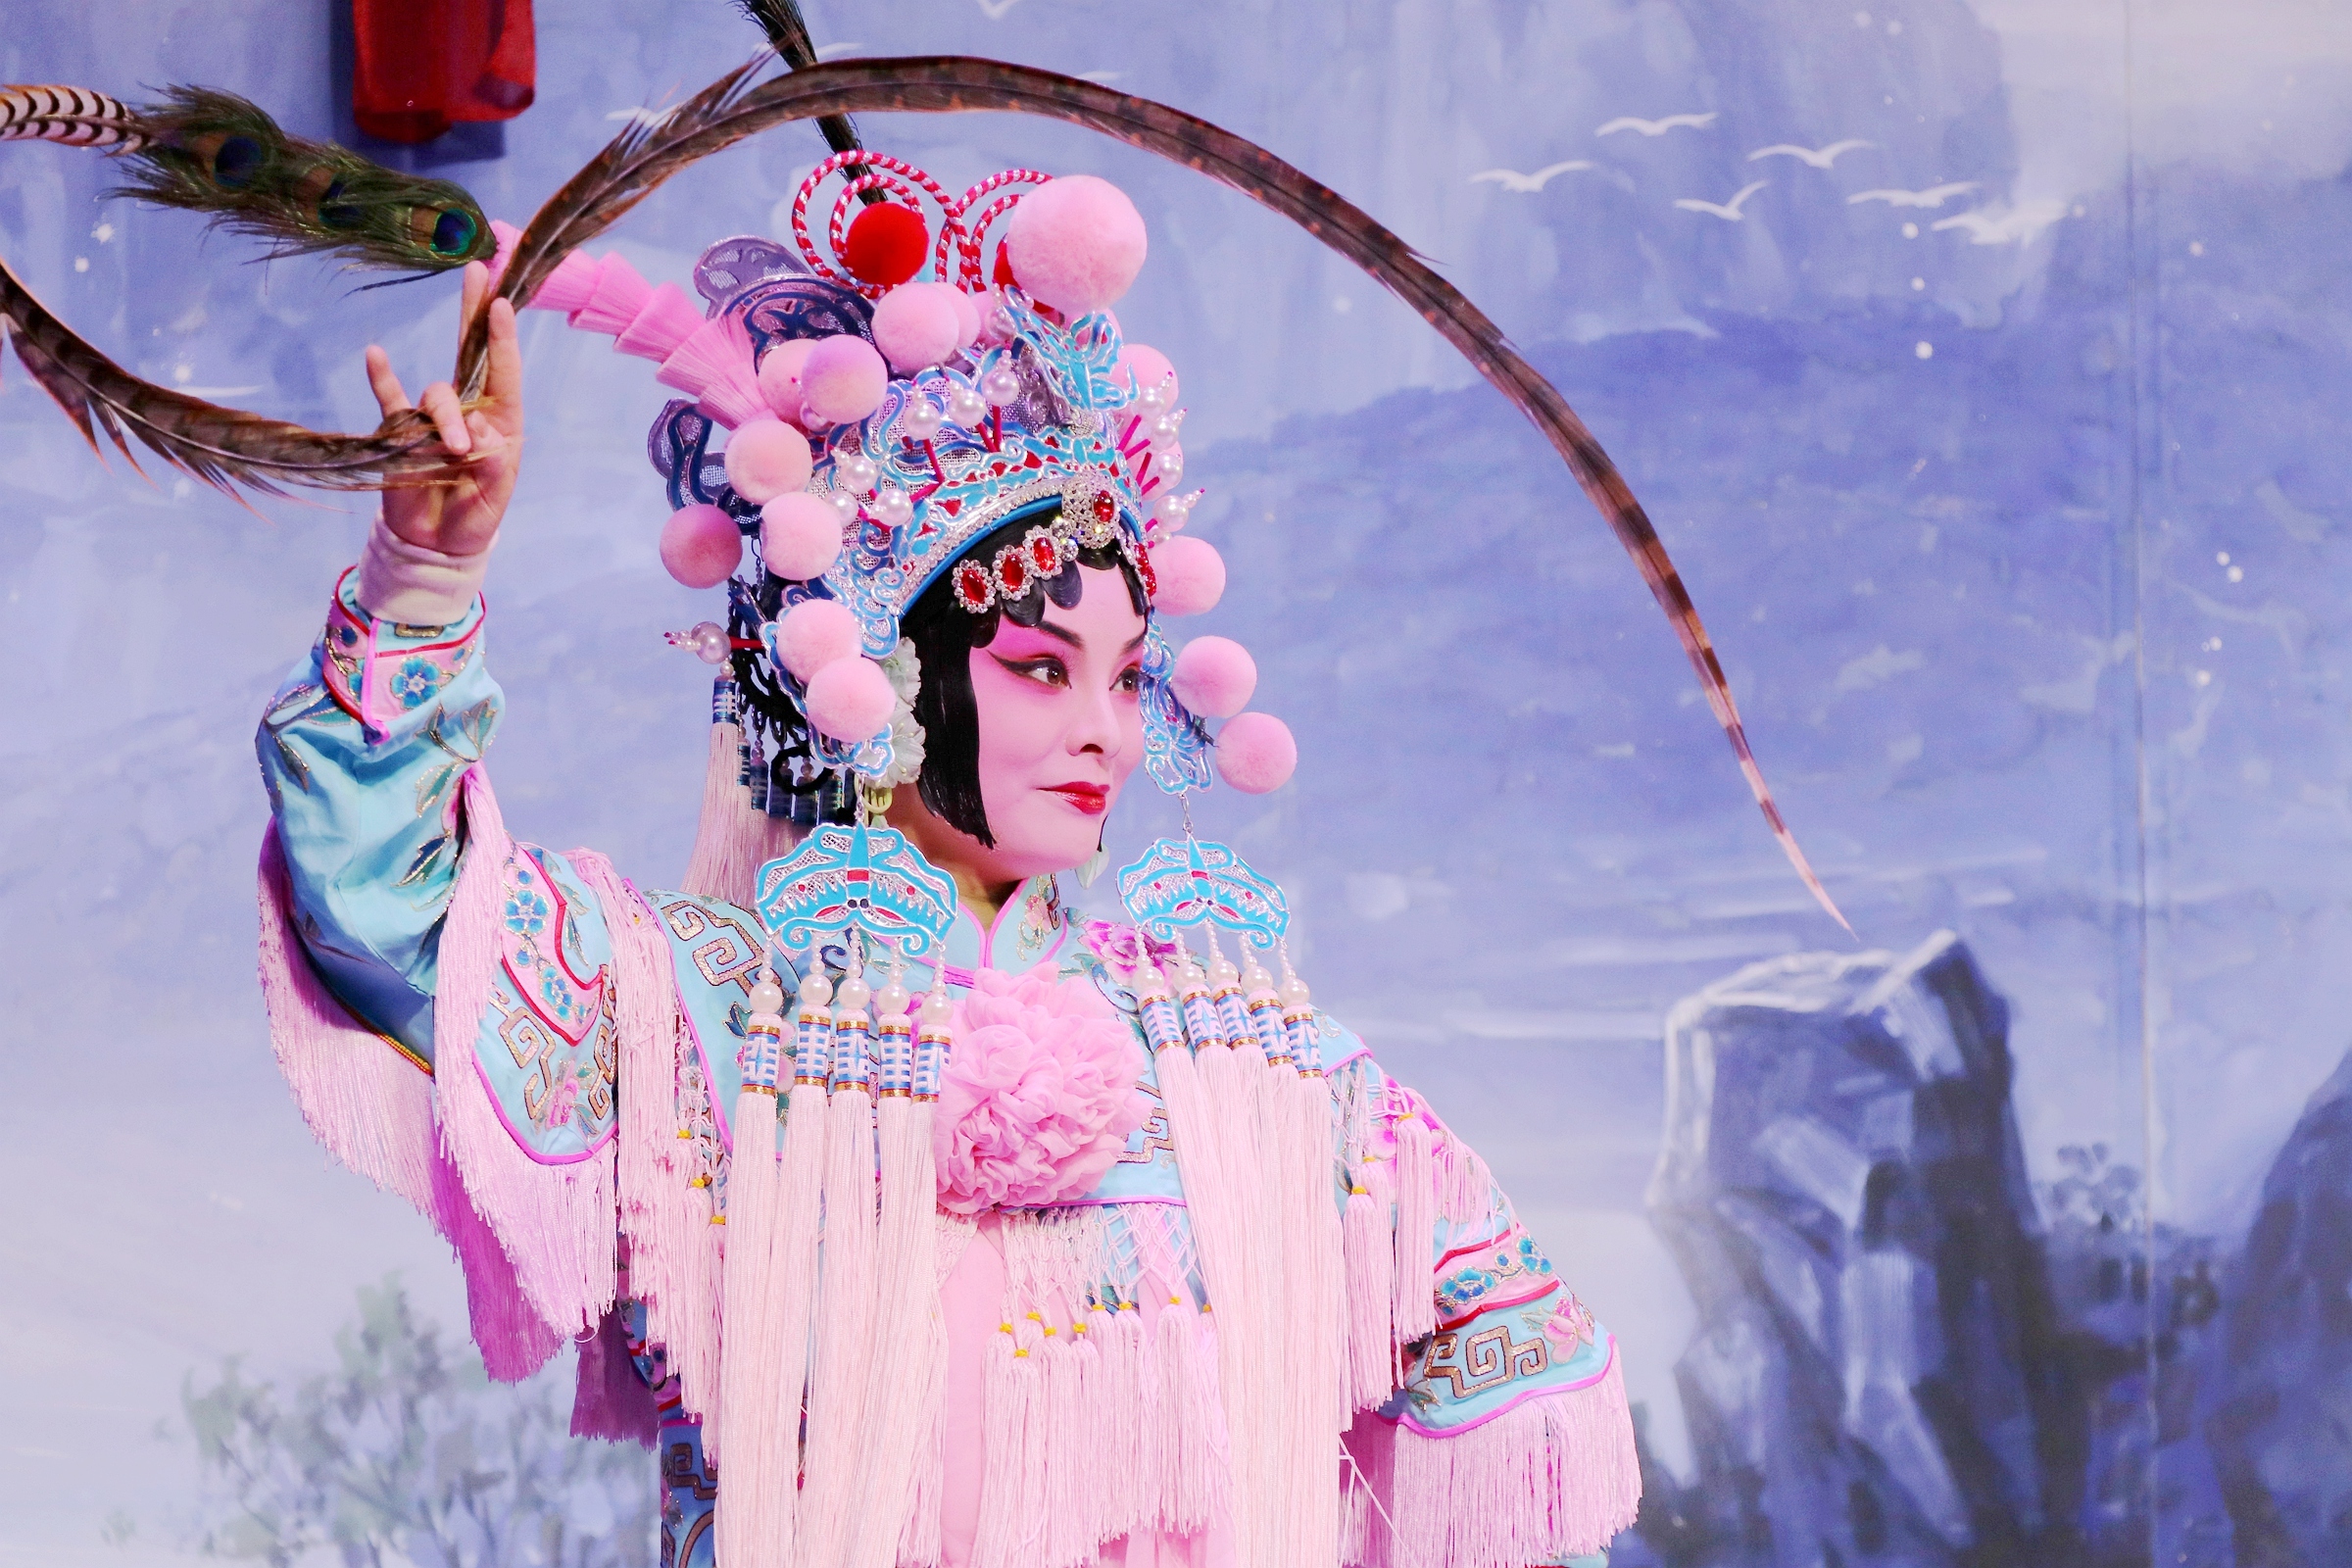 沉浸式感受戏曲 这场与观众“面对面”的水浒故事在武汉剧院上演